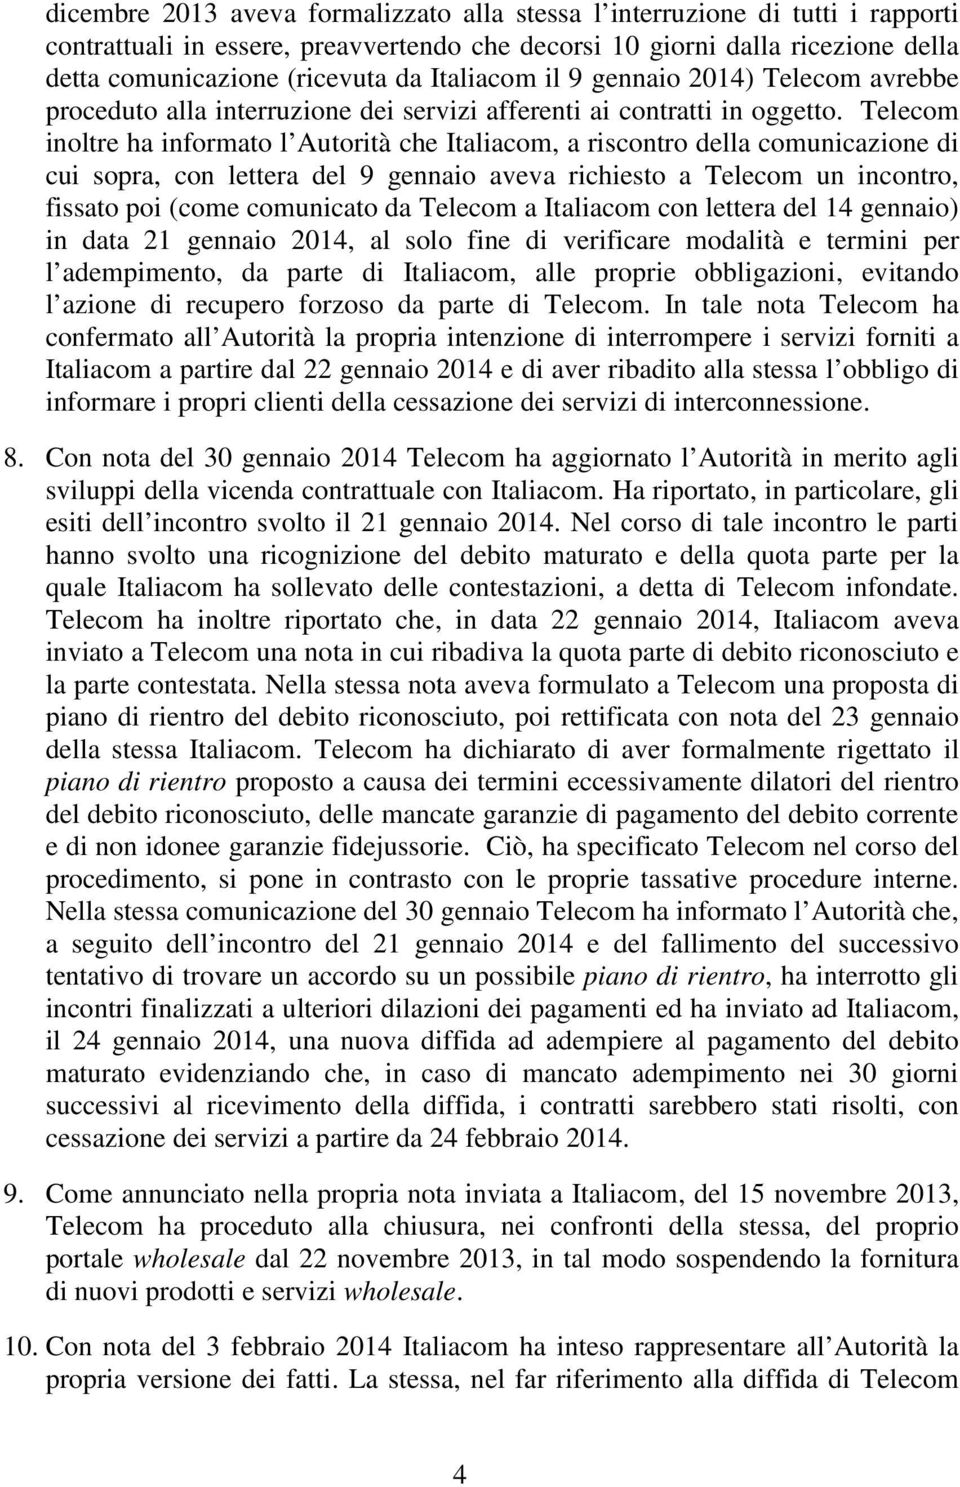 Telecom inoltre ha informato l Autorità che Italiacom, a riscontro della comunicazione di cui sopra, con lettera del 9 gennaio aveva richiesto a Telecom un incontro, fissato poi (come comunicato da